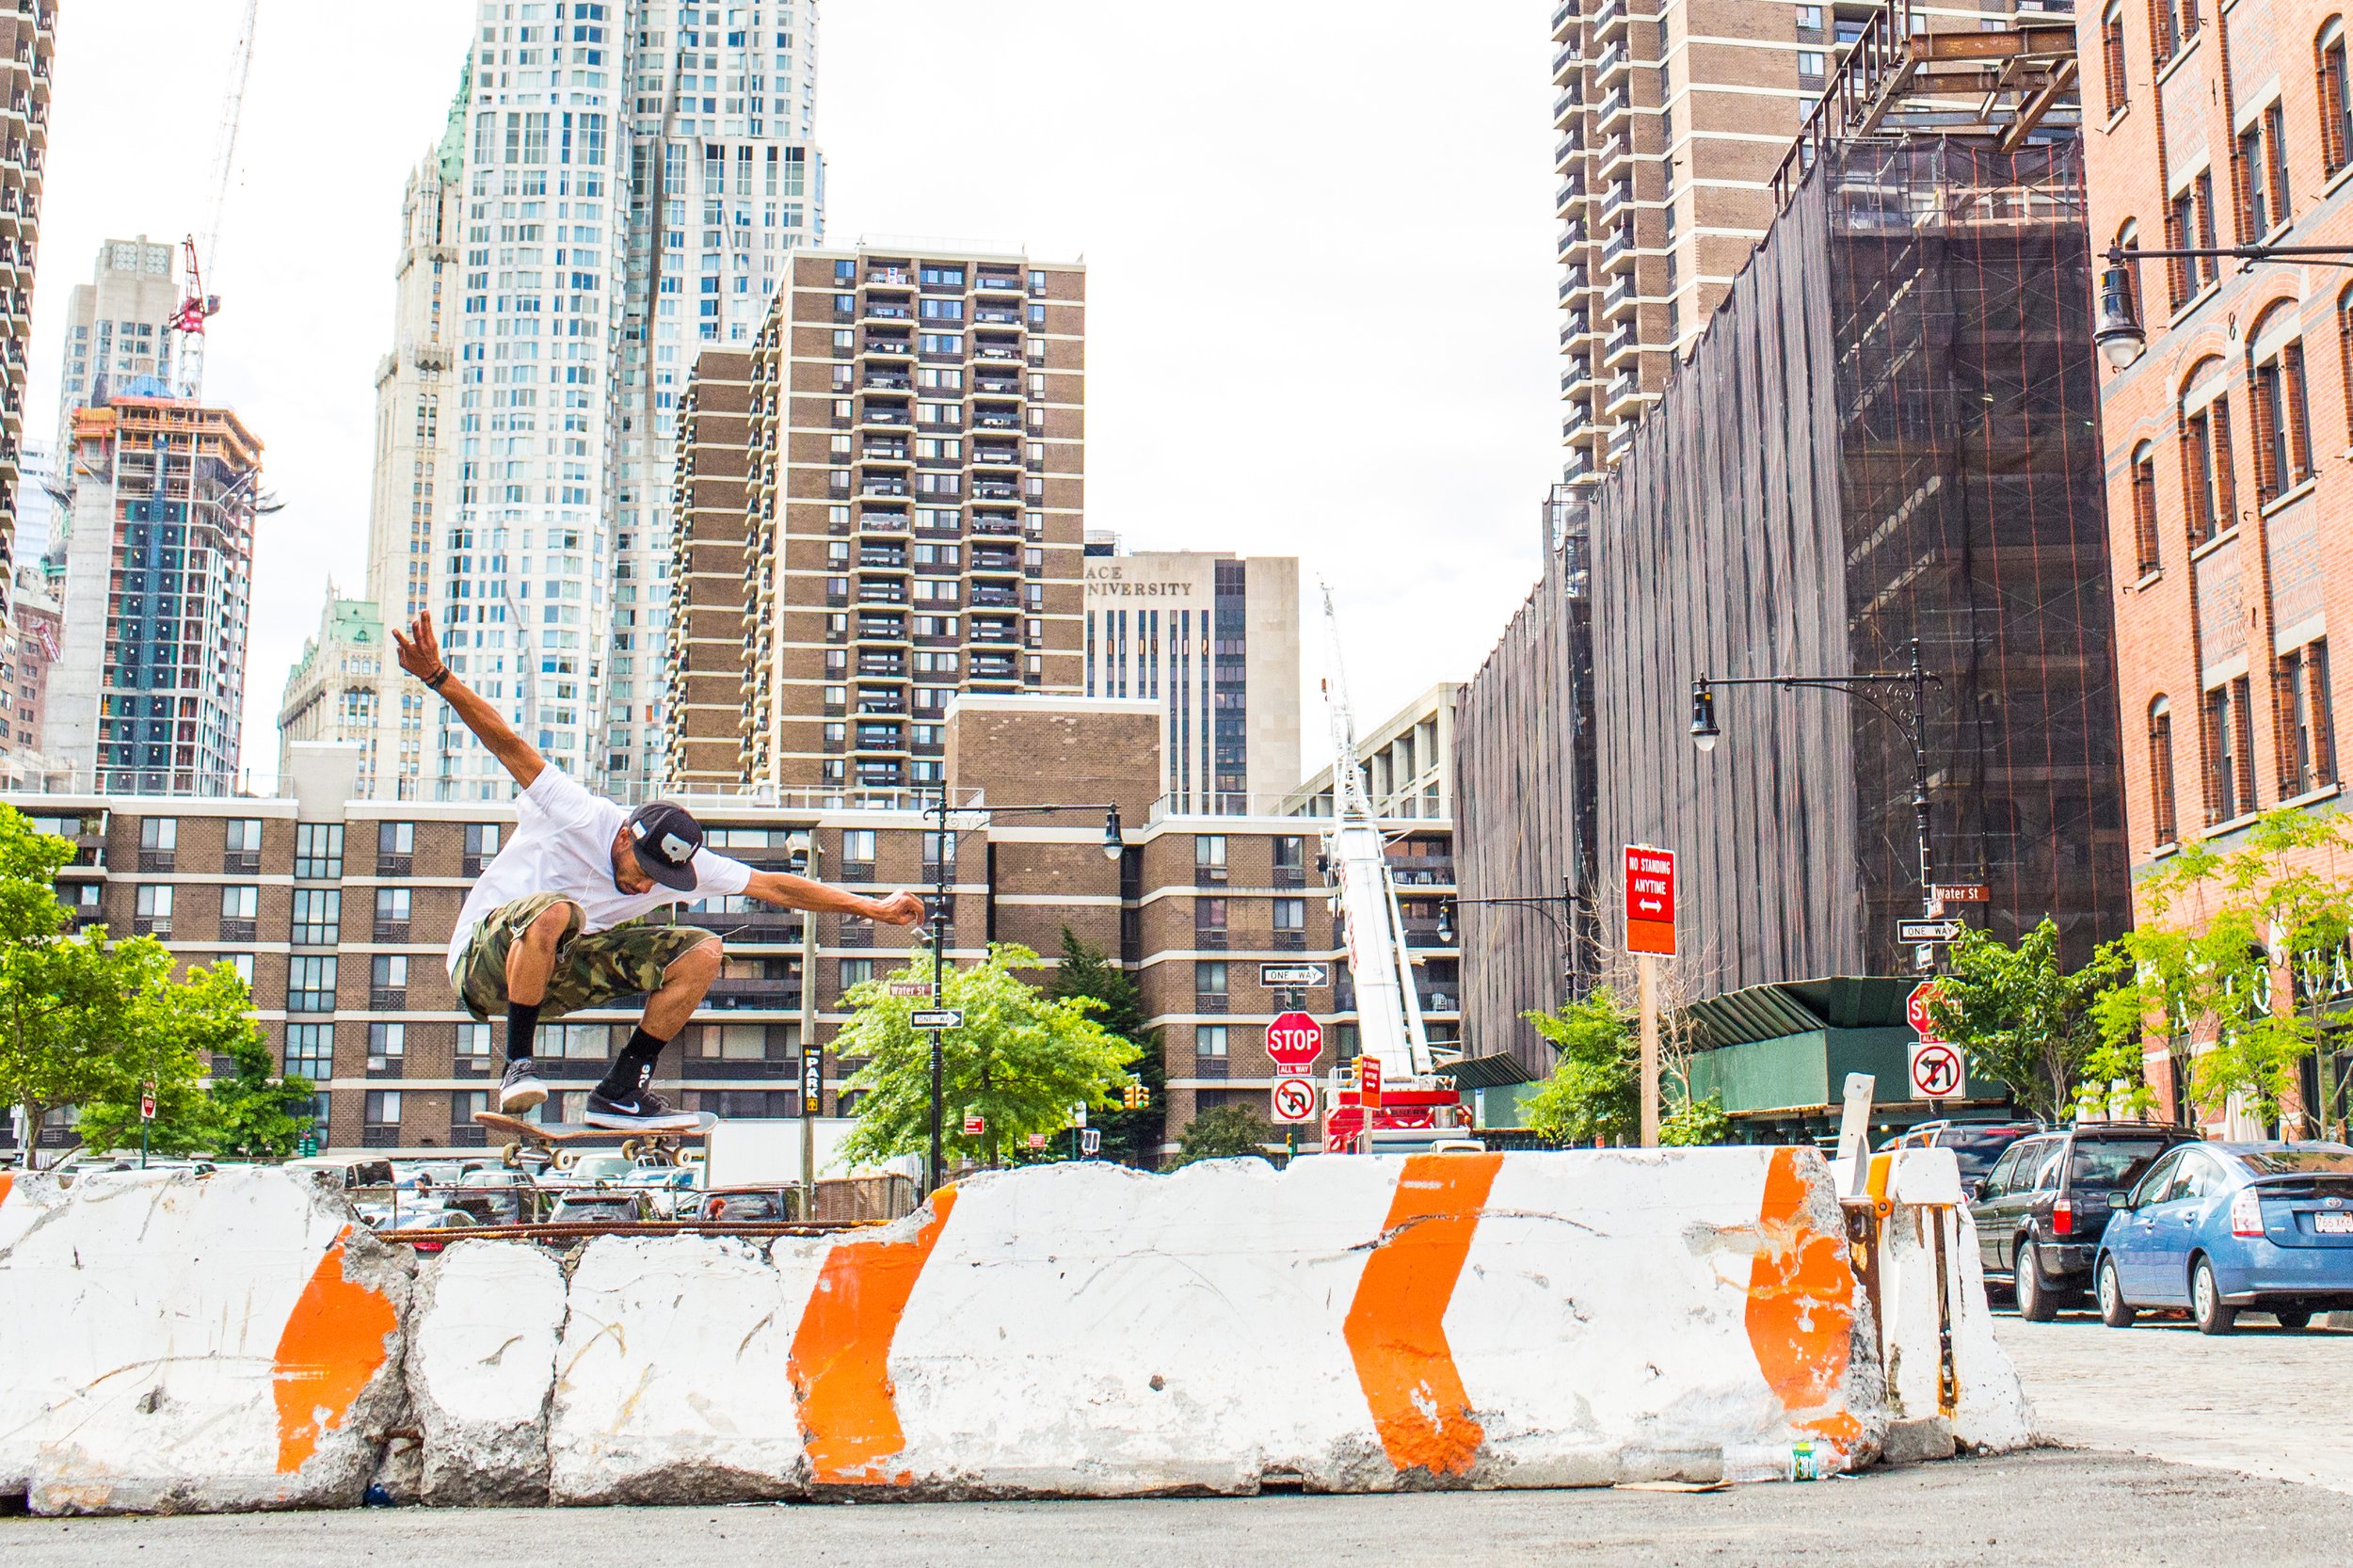  Nate Fantasia skateboarder in NYC 